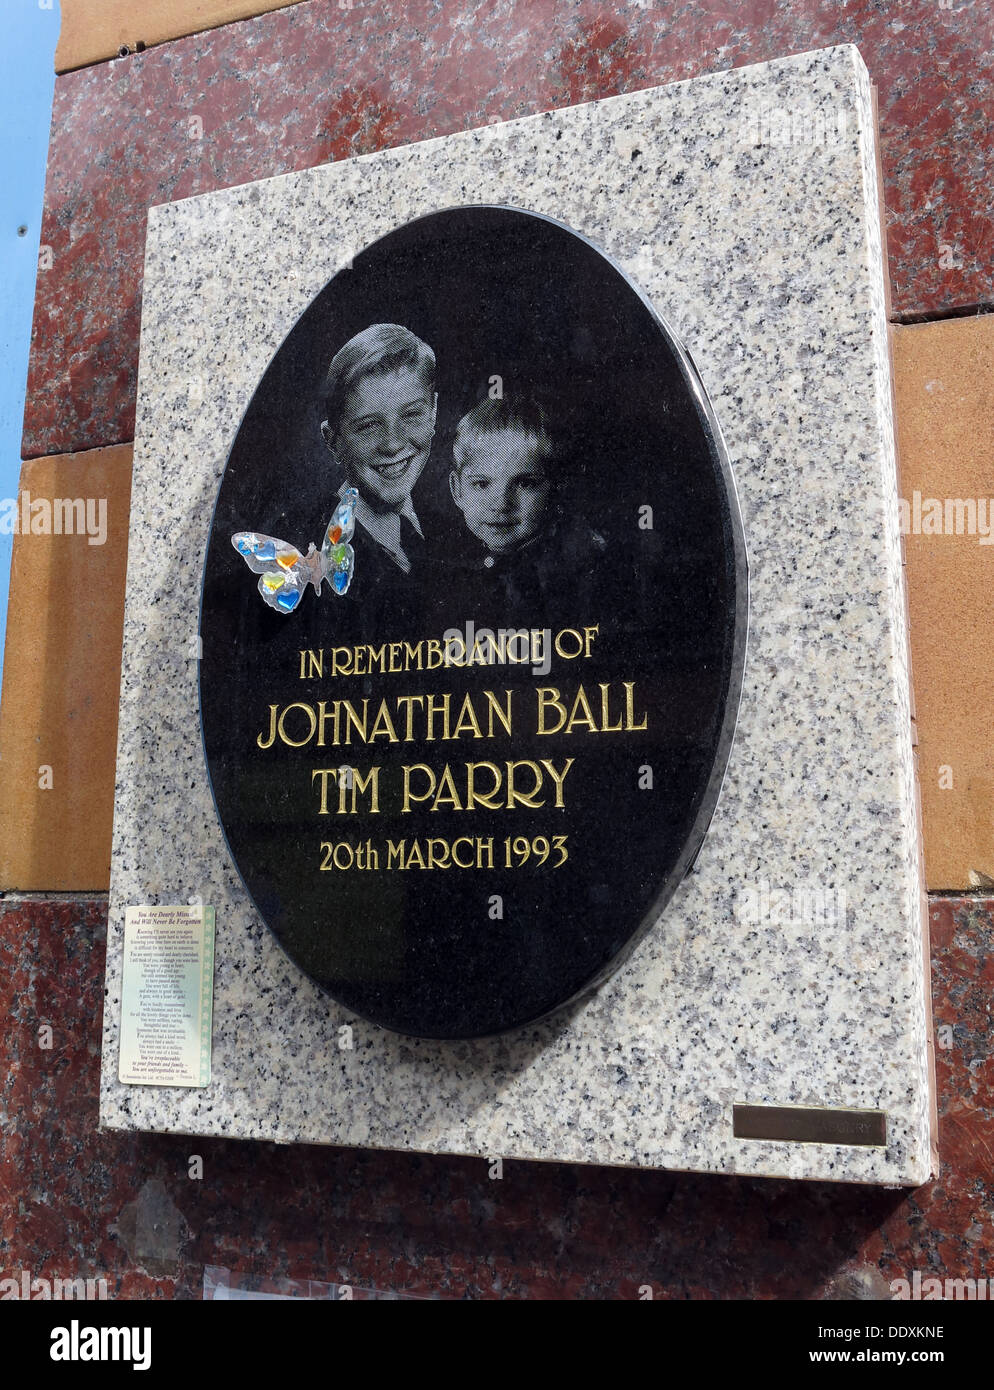 Plaque commémorative à Jonathon ball et Tim Parry, enfants victimes de la bombe de l'IRA à Warrington 20/03/1993, Cheshire, Royaume-Uni (Mémorial de remplacement) Banque D'Images